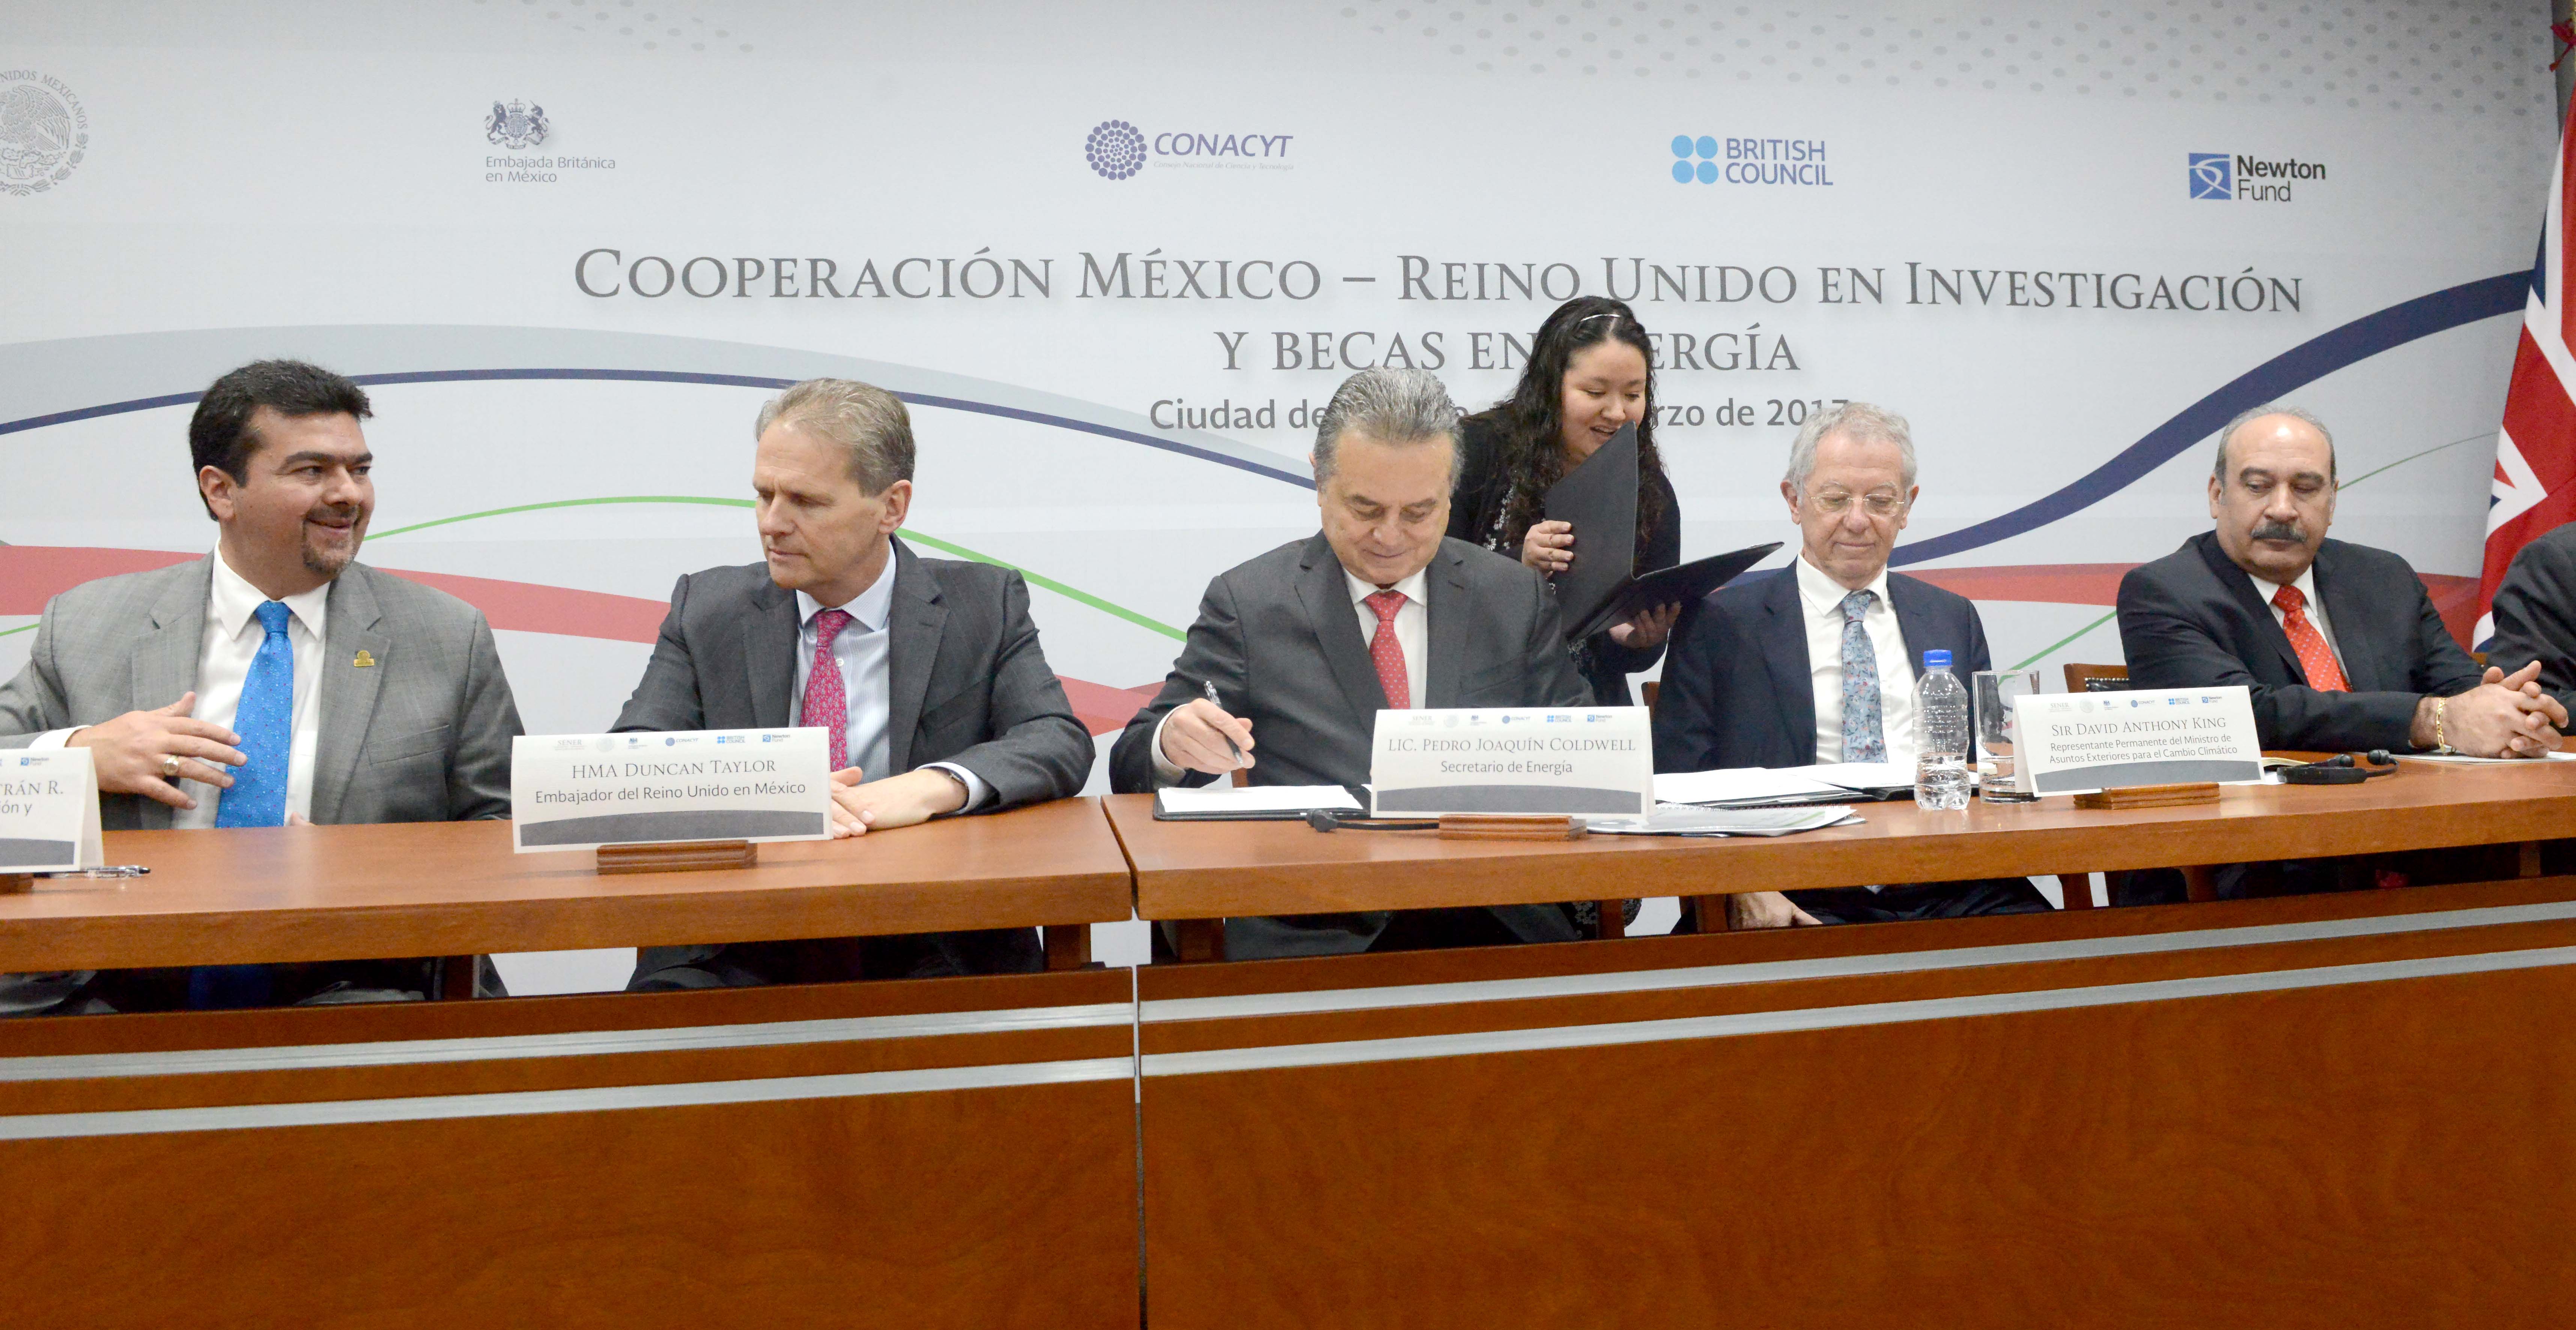 El Memorándum de Entendimiento entre la Secretaría de Energía y el British Council tiene el objetivo de apoyar iniciativas de largo alcance, orientadas a fomentar colaboraciones de investigación e innovación para dar solución a los retos de desarrollo sustentable de México.